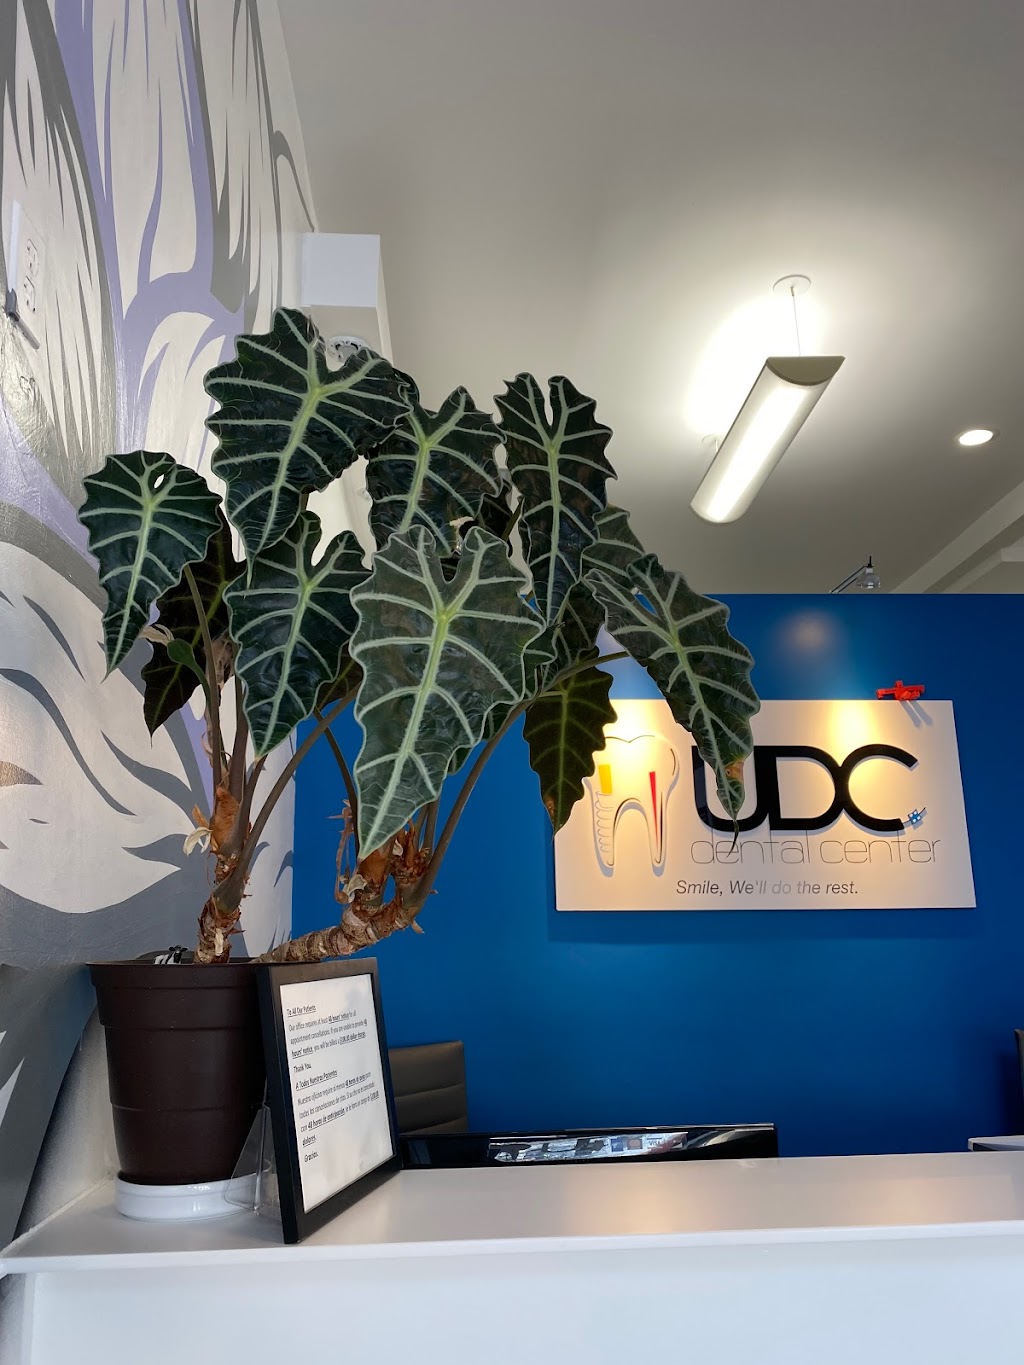 UDC Dental Center | 3448 Mission St, San Francisco, CA 94110 | Phone: (415) 400-5115